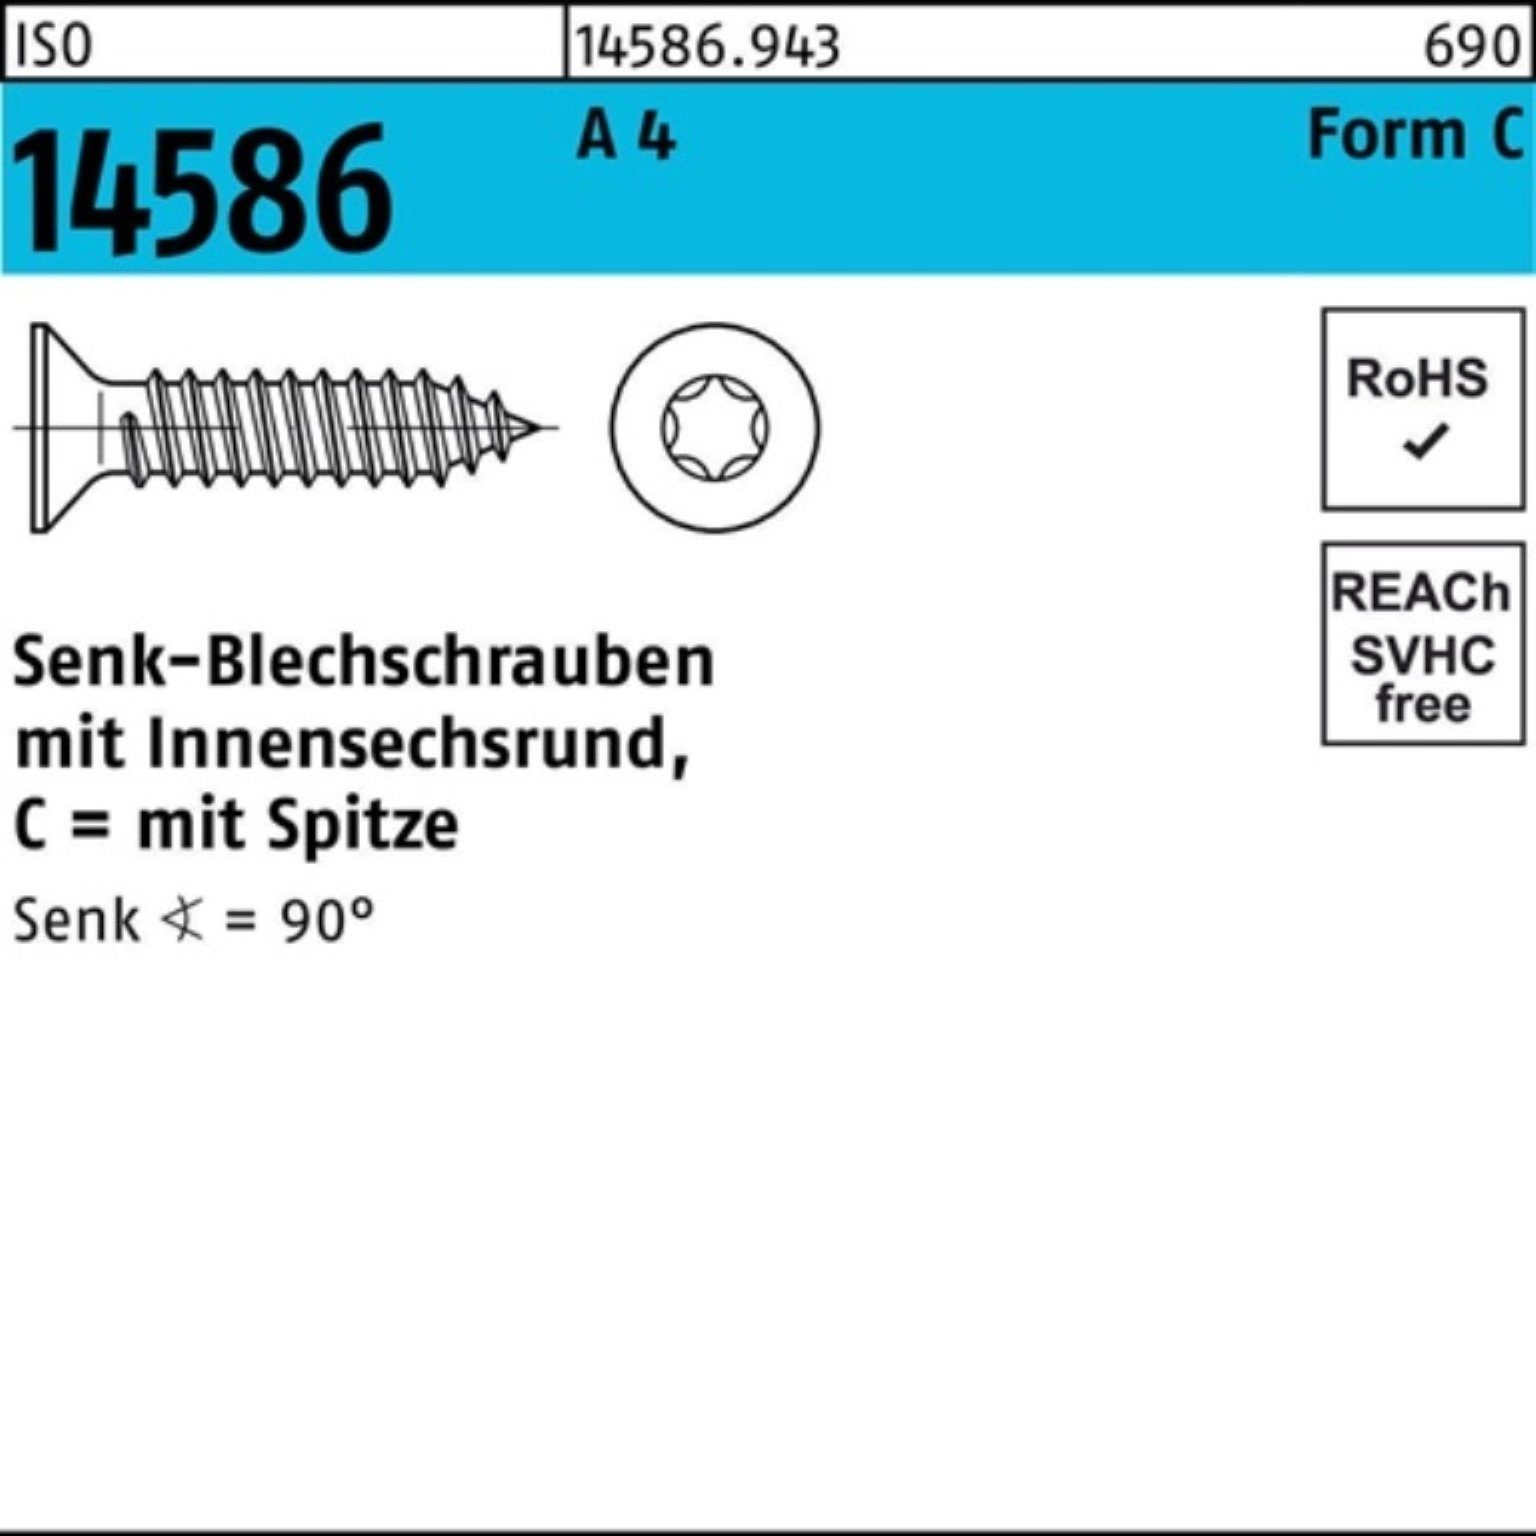 Reyher Schraube 250er Pack Senkblechschraube ISO 14586 ISR/Spitze 5,5x 60-T25 A 4 250